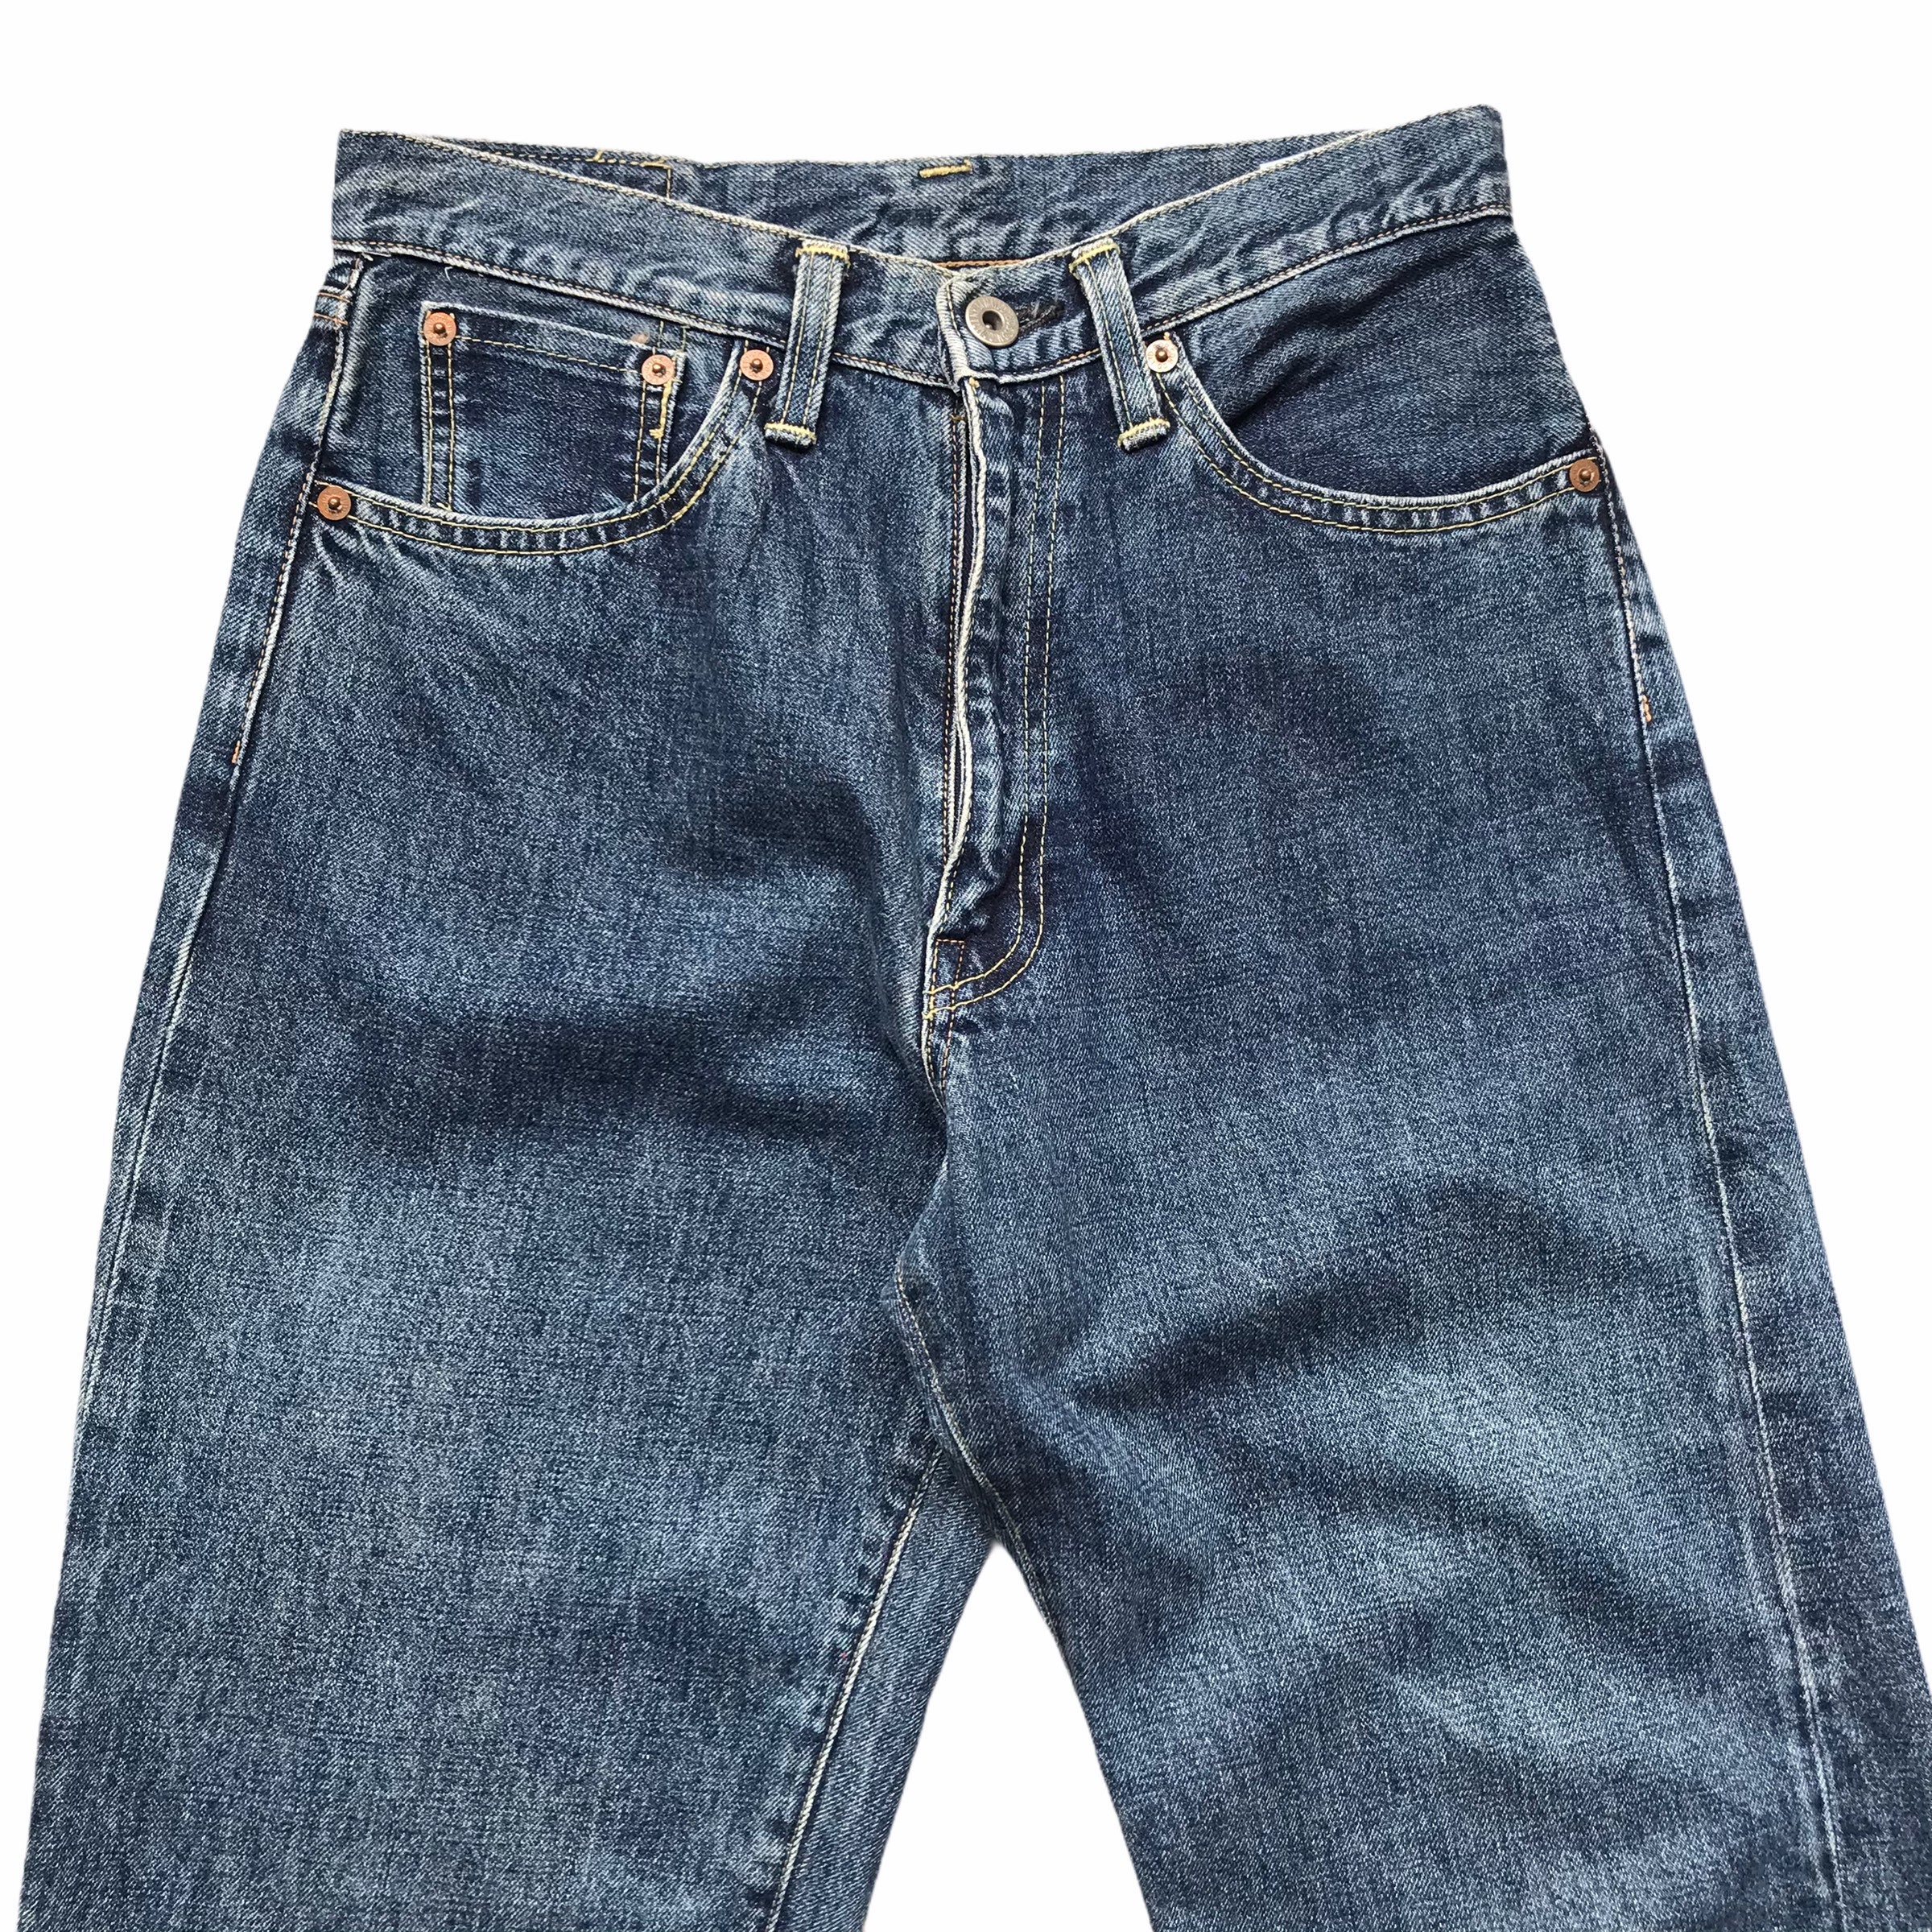 Vintage Bobson Dark Blue Jeans High Waist Mom Jeans Boyfriend | Etsy